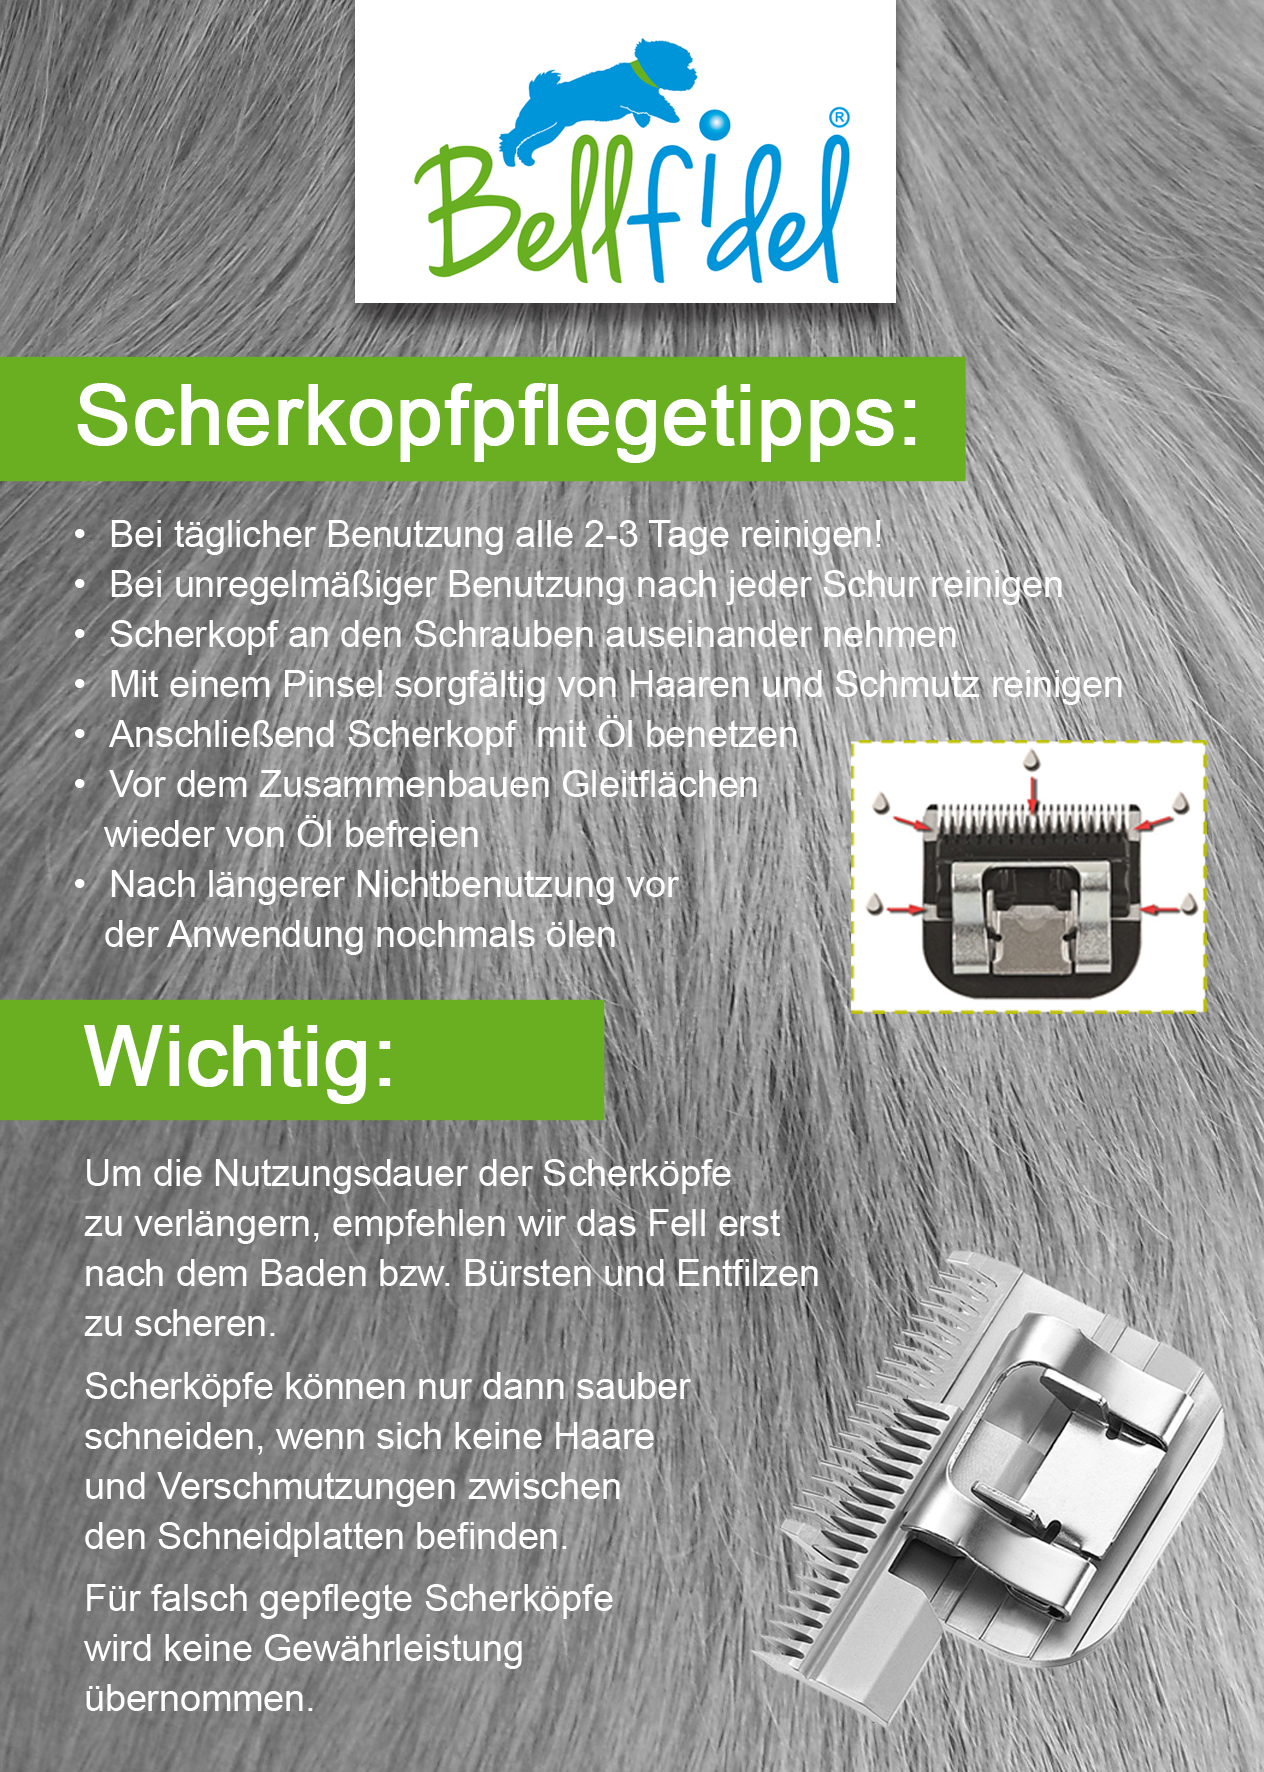 https://www.bellfidel.de/media/image/6c/c1/a4/Scherkopfpflegetipps-15x10-7-copy.jpg